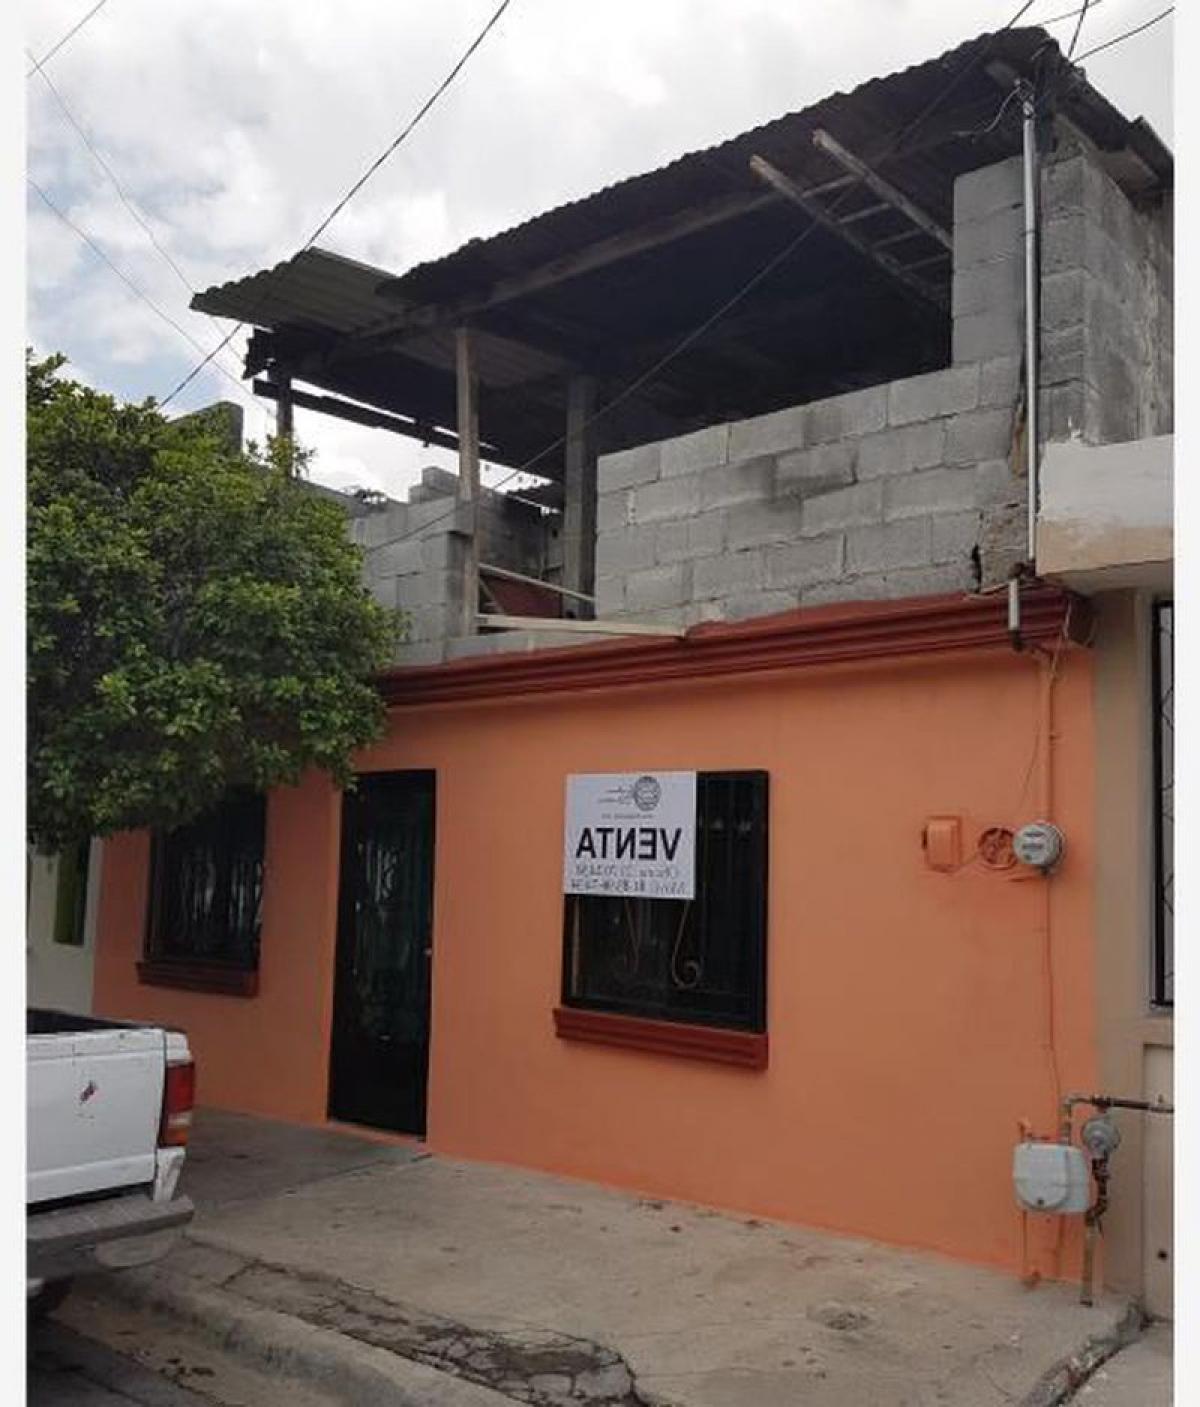 Picture of Home For Sale in Monterrey, Nuevo Leon, Mexico